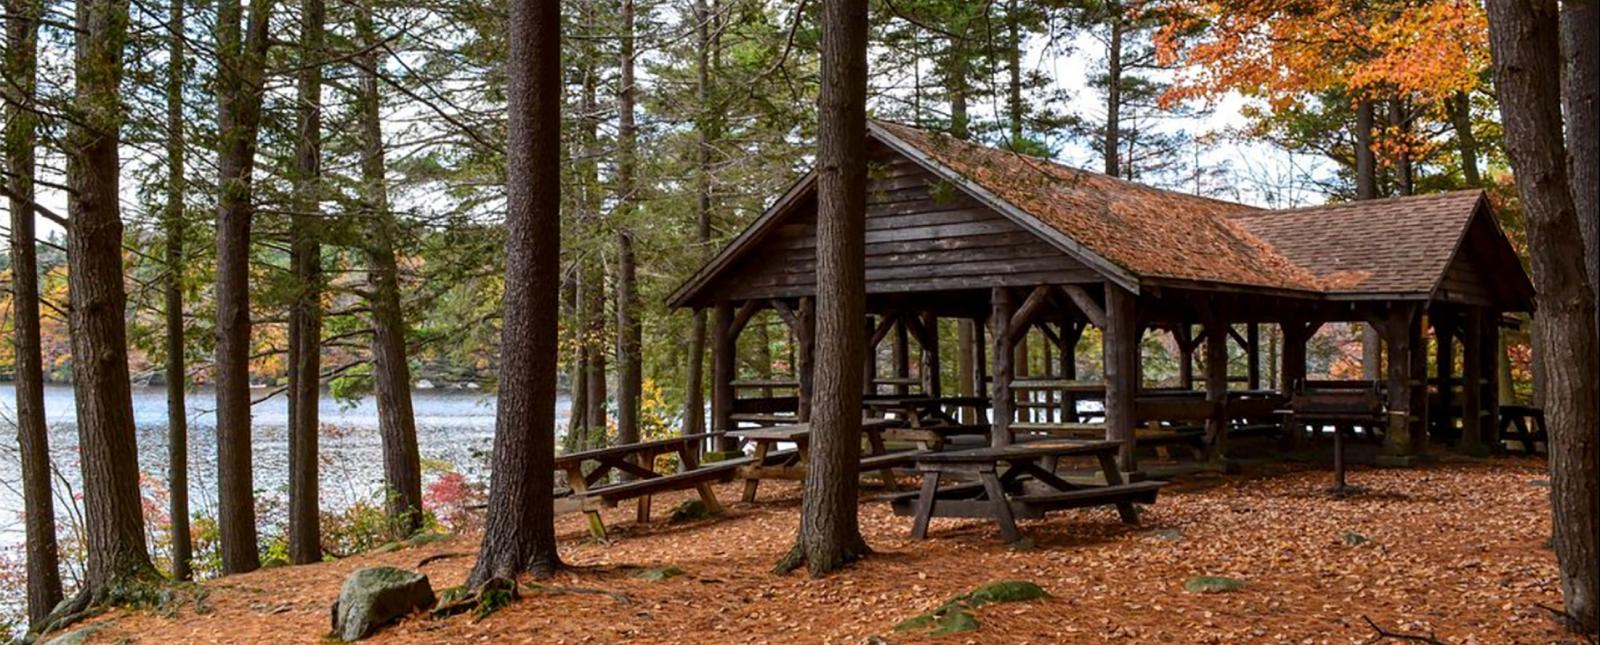 Refugio para picnic a través del bosque en el Parque Estatal Burr Pond en otoño (Instagram@nelson-grenier-photography)